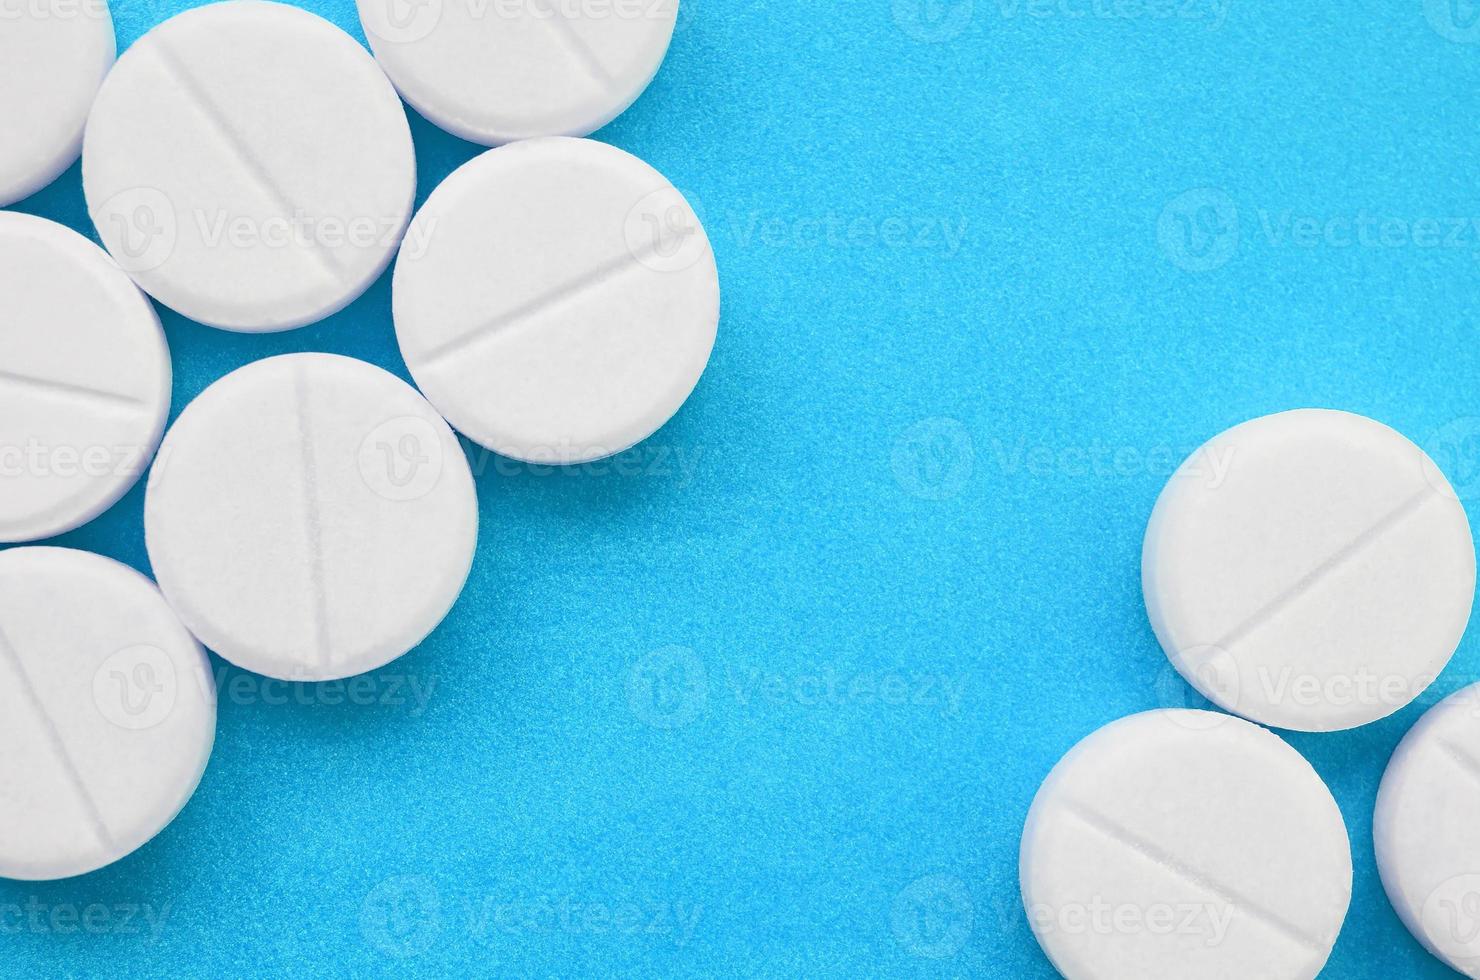 unas pocas tabletas blancas yacen sobre una superficie de fondo azul brillante. imagen de fondo sobre temas médicos y farmacéuticos foto